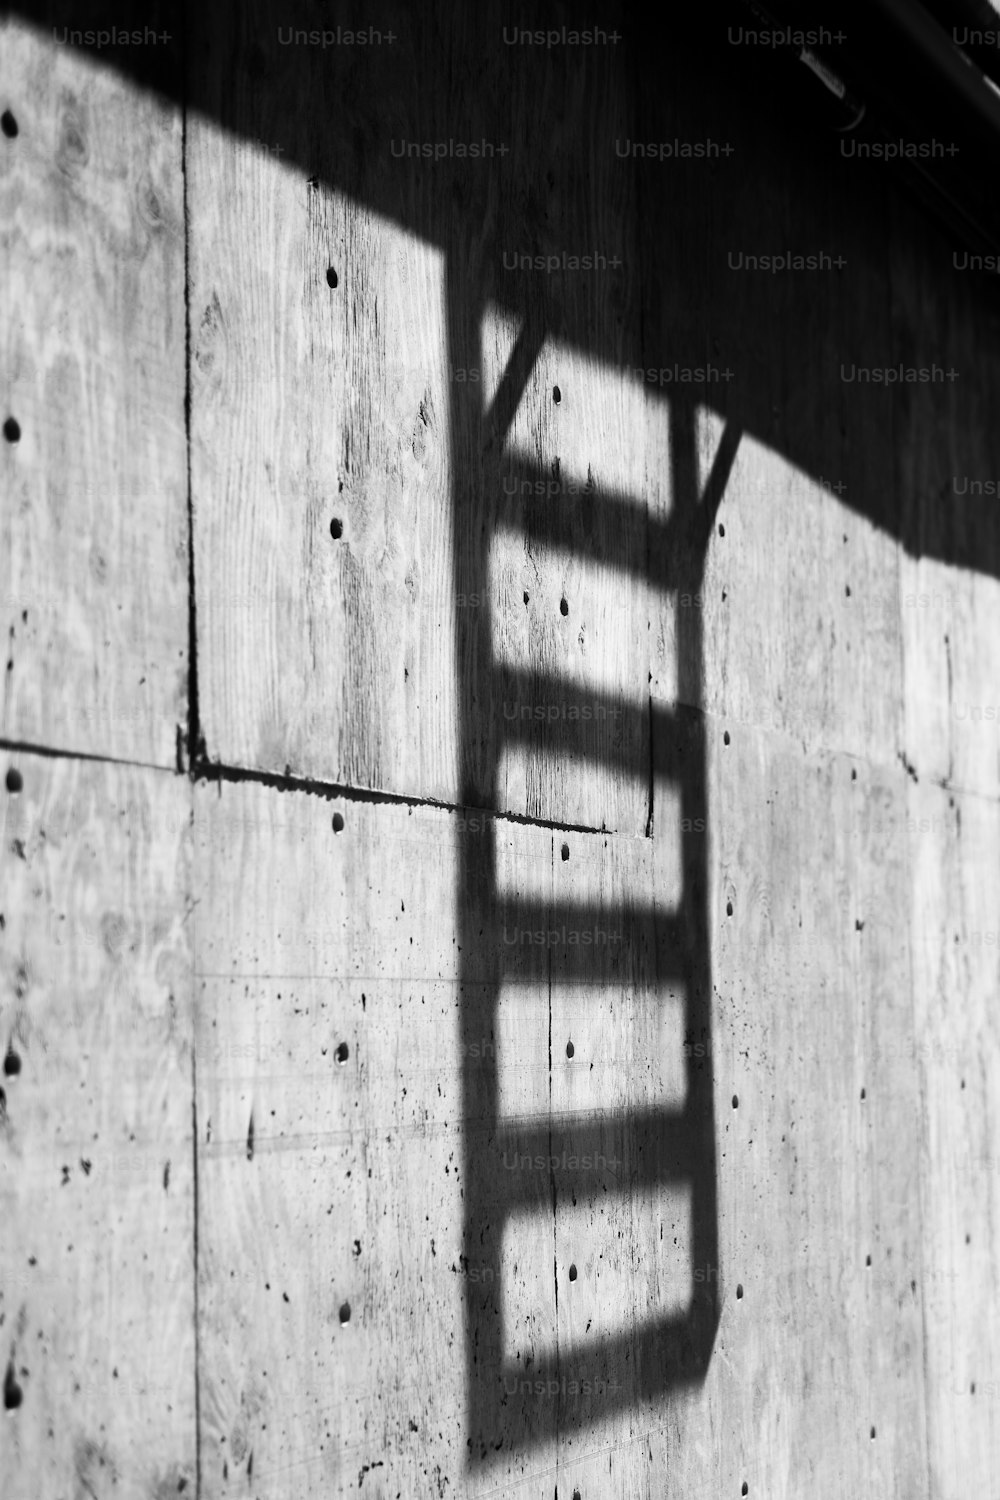 La sombra de una escalera en una pared